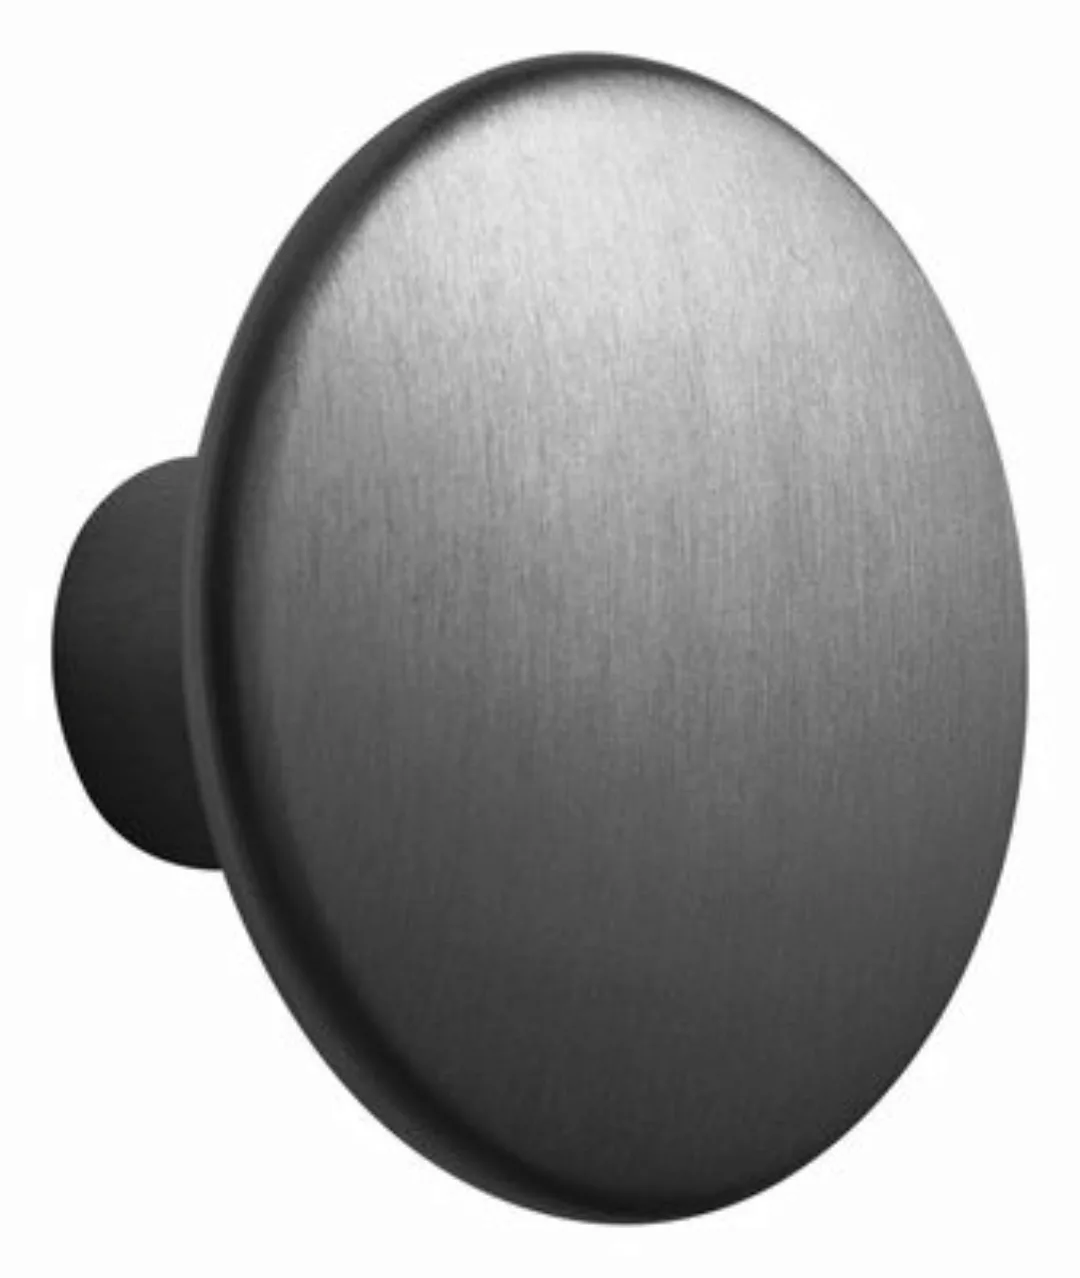 Wandhaken The Dots Metal metall schwarz / Größe L - Ø 5 cm - Muuto - Schwar günstig online kaufen